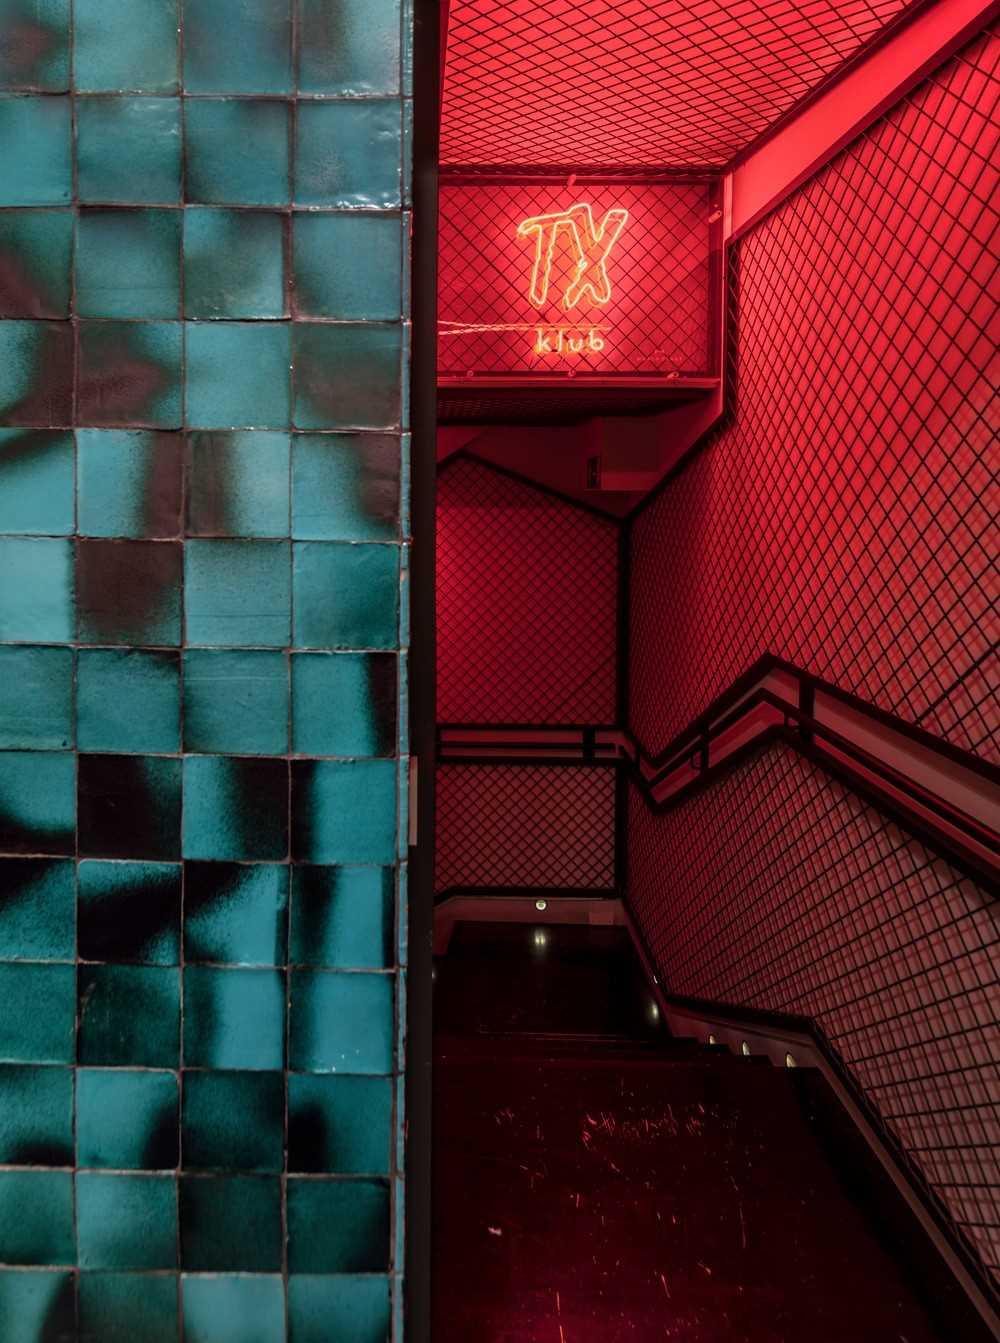 Узкий и загадочный туннель, освещенный красным светом, привлекает клиентов в подвал, где расположен частный клуб.